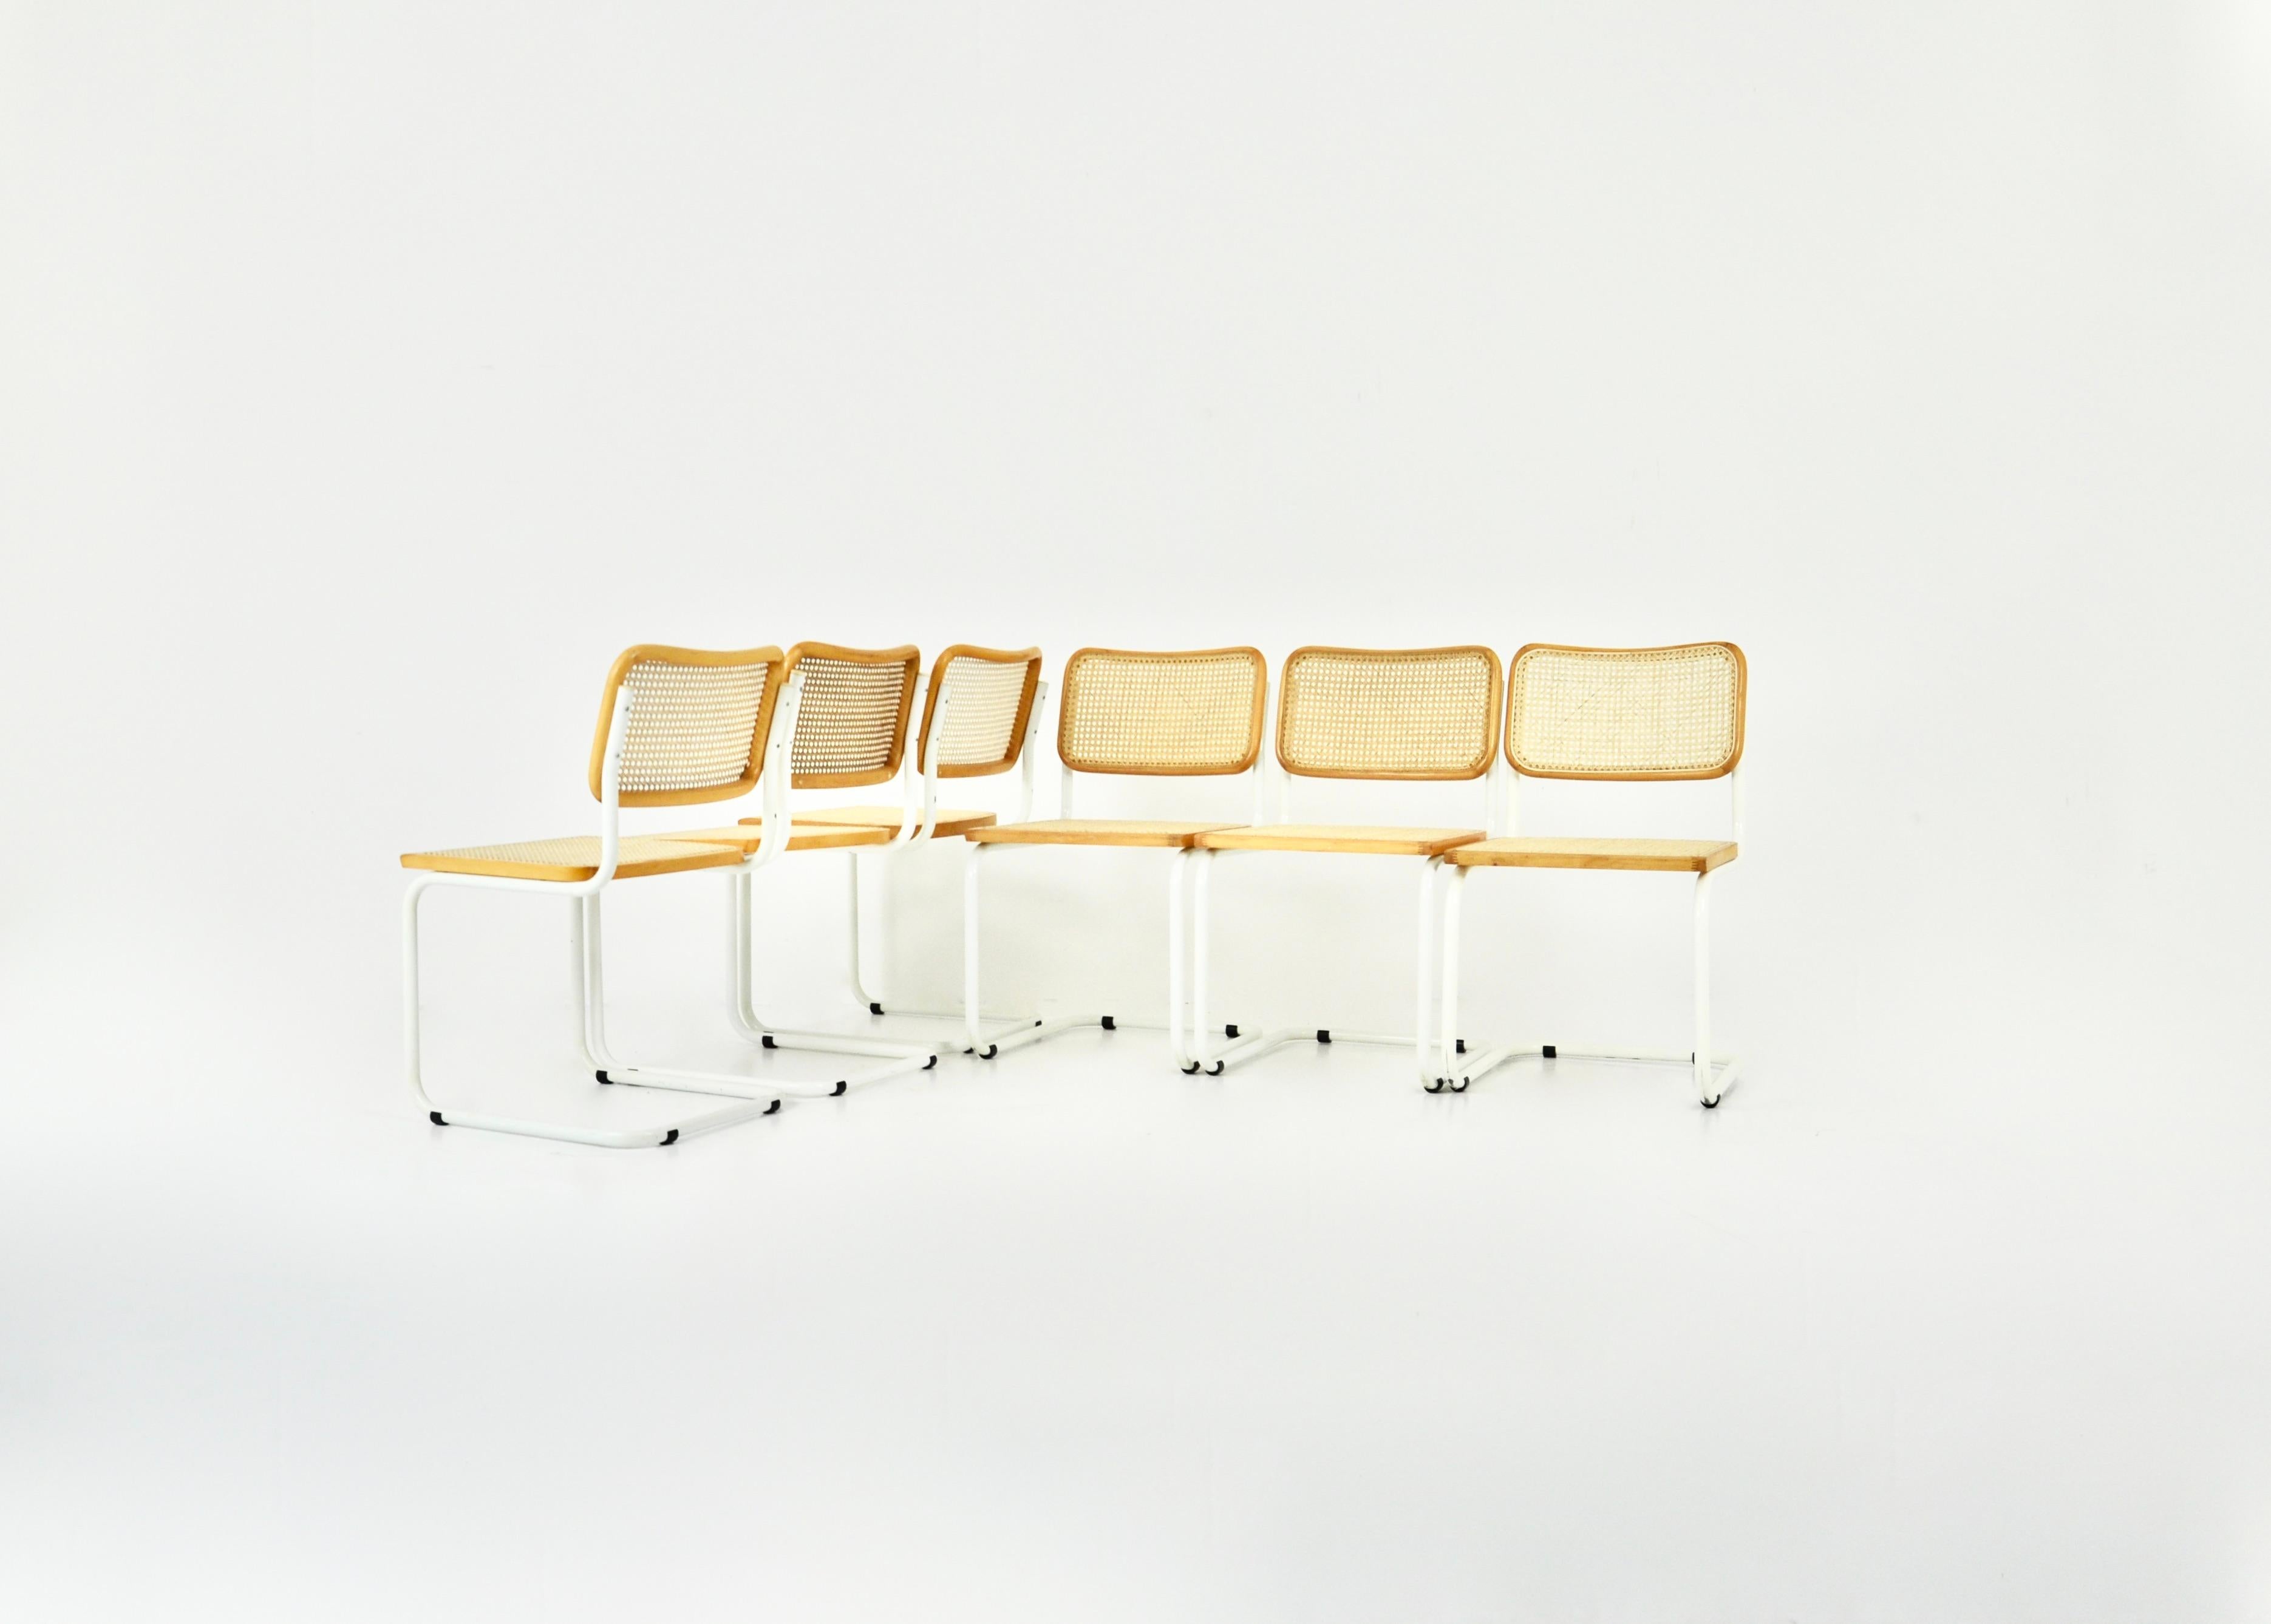 Satz von 6 Stühlen aus weißem Metall, Holz und Schilfrohr. Abnutzung durch die Zeit und das Alter der Stühle. 
Abmessungen: Sitzhöhe: 45 cm.
Guter Zustand
Abnutzung aufgrund des Alters der Stühle.